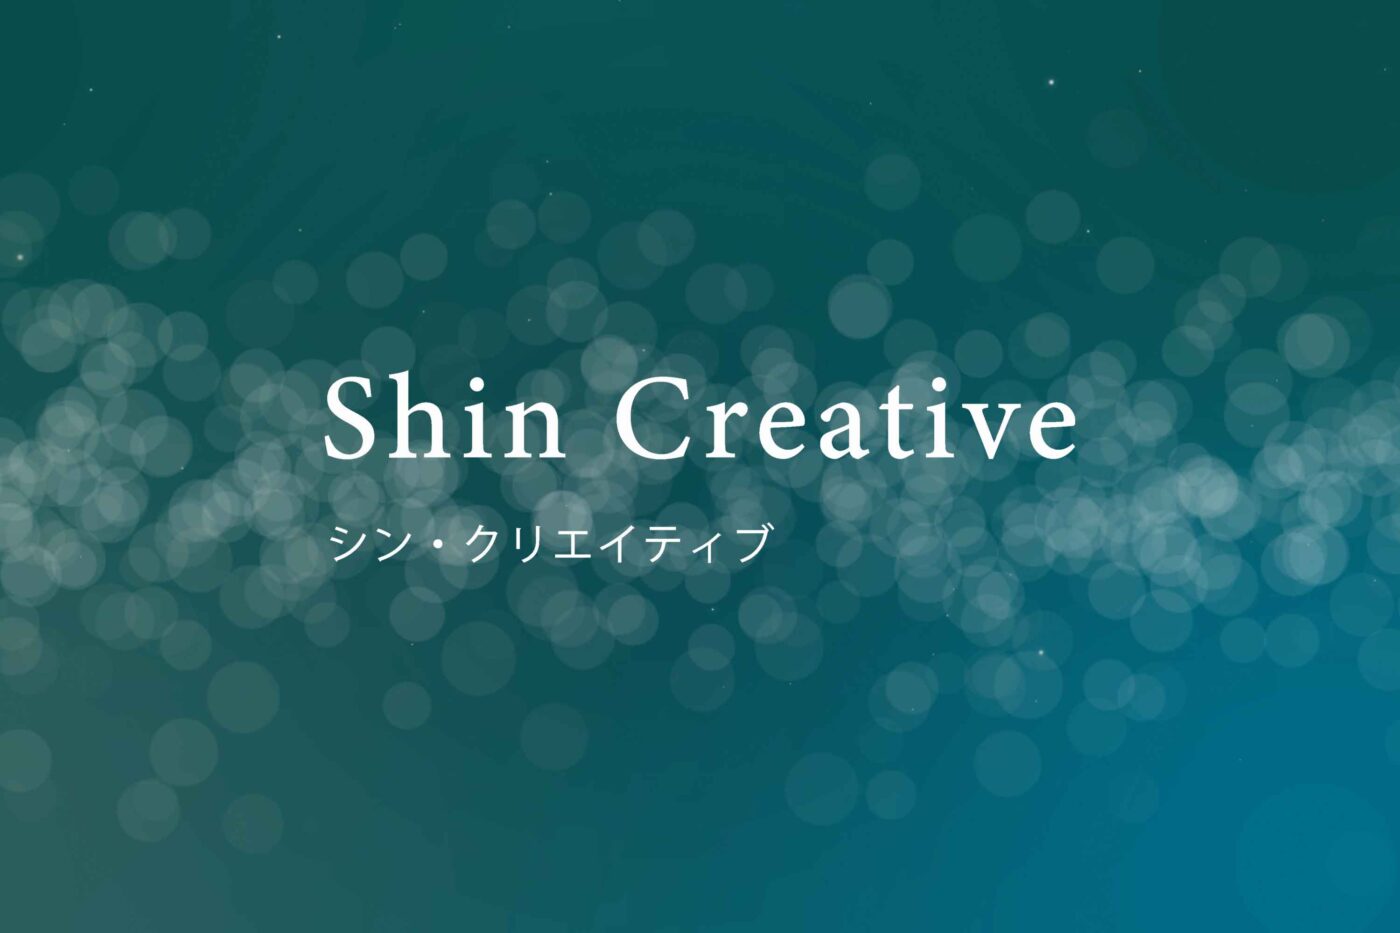 Shin Creative